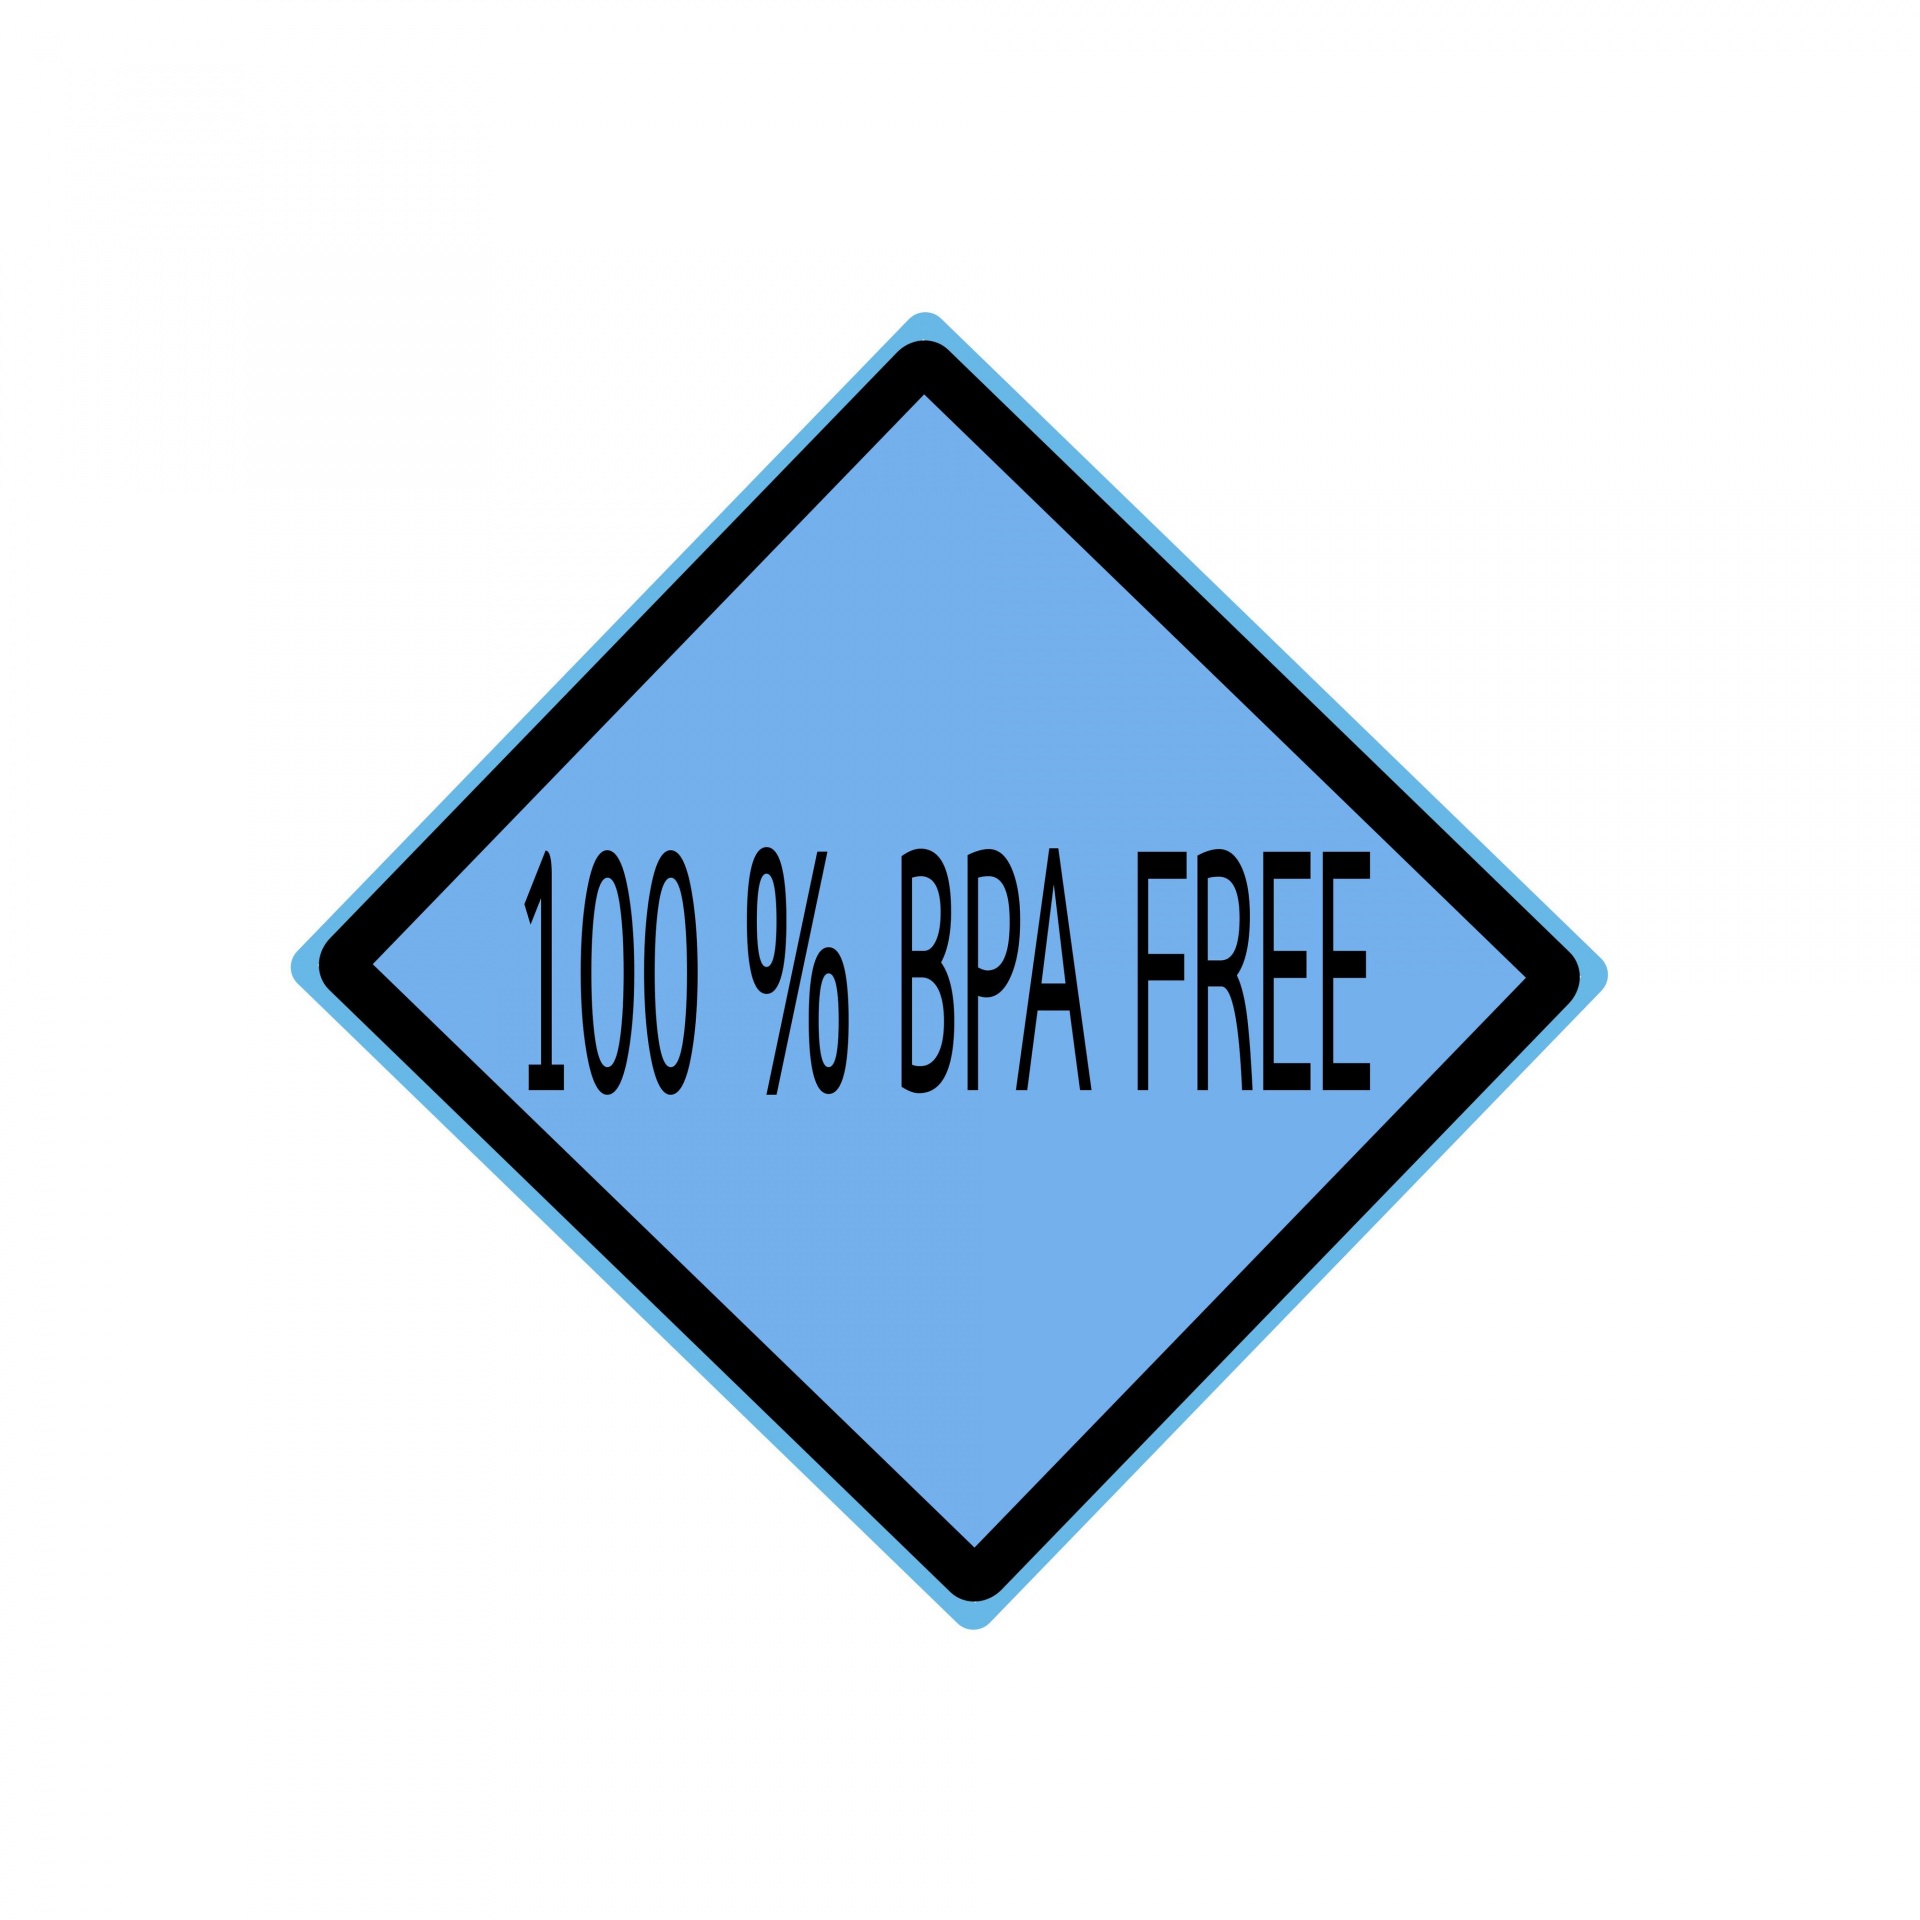 Texto de sello negro 100% BPA FREE